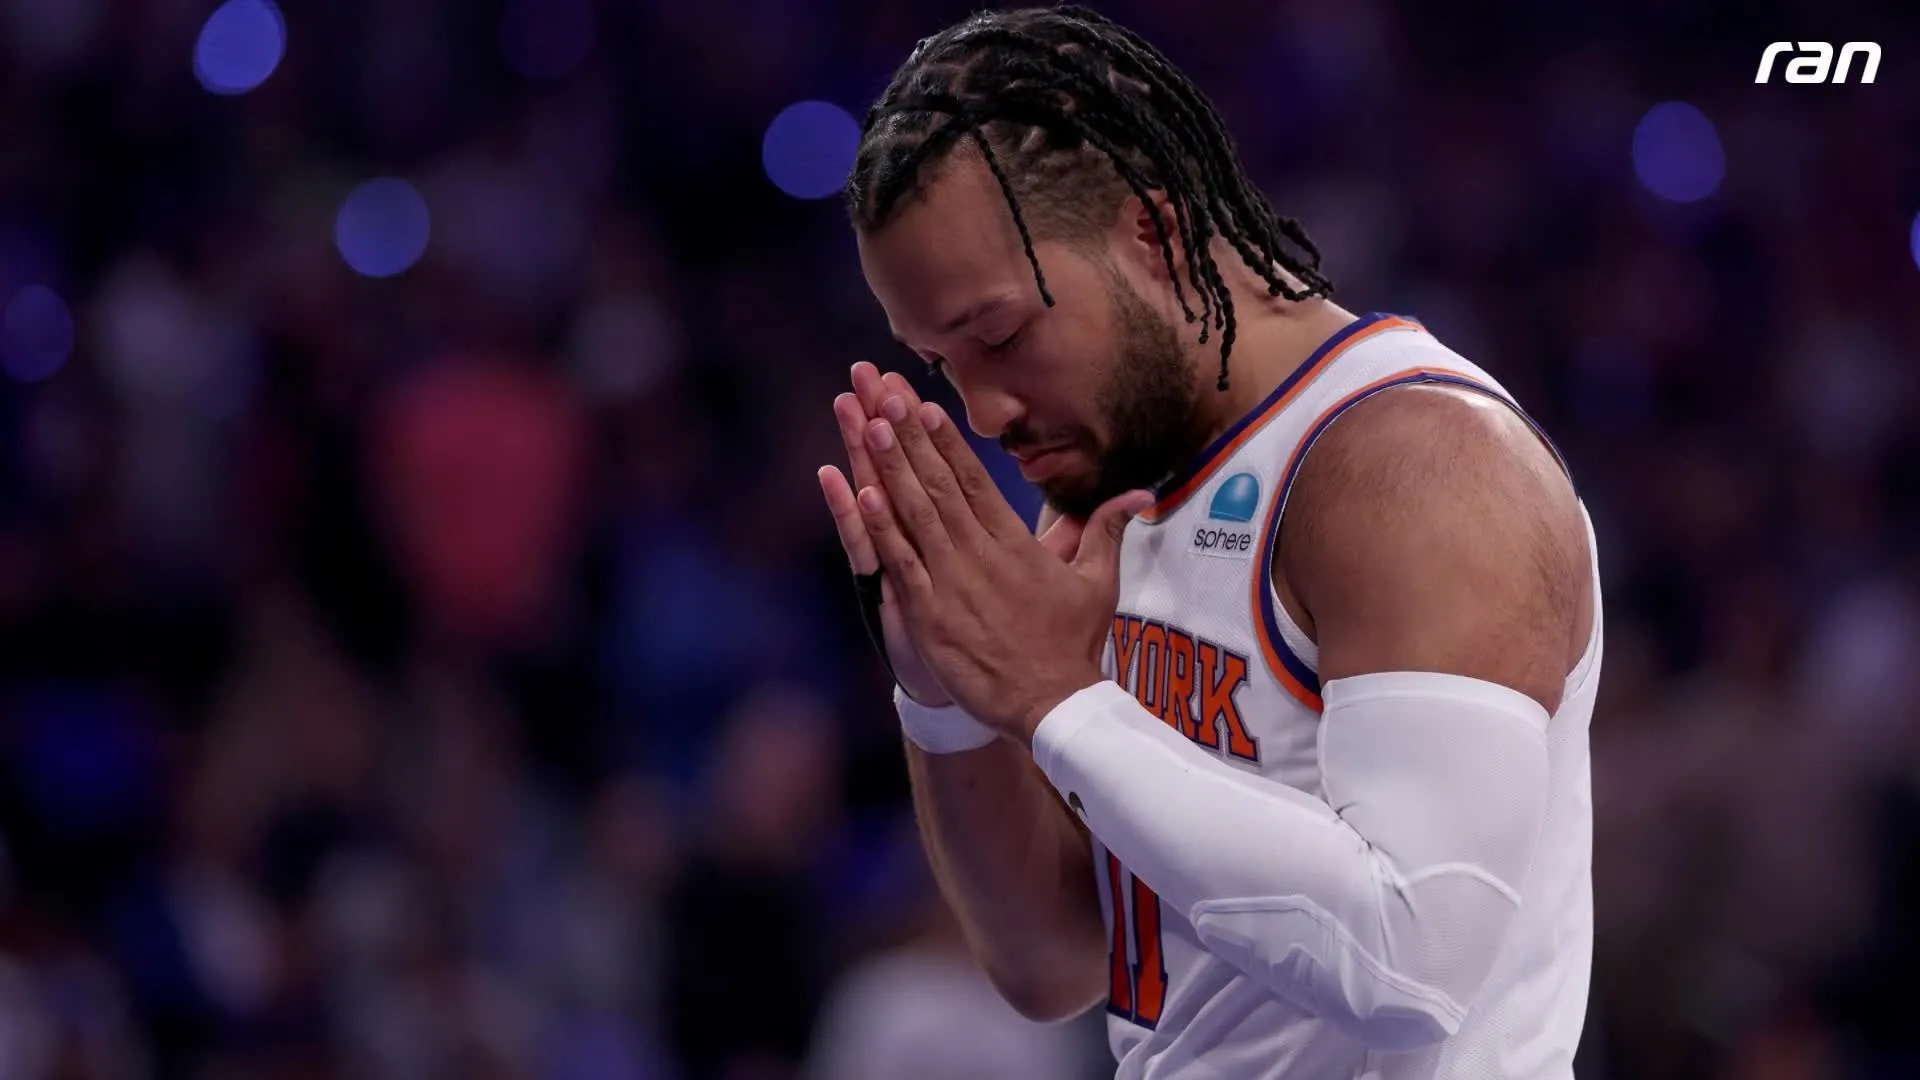 NBA : Un bon présage pour les Knicks ? Les fans célèbrent la victoire dans un match historique